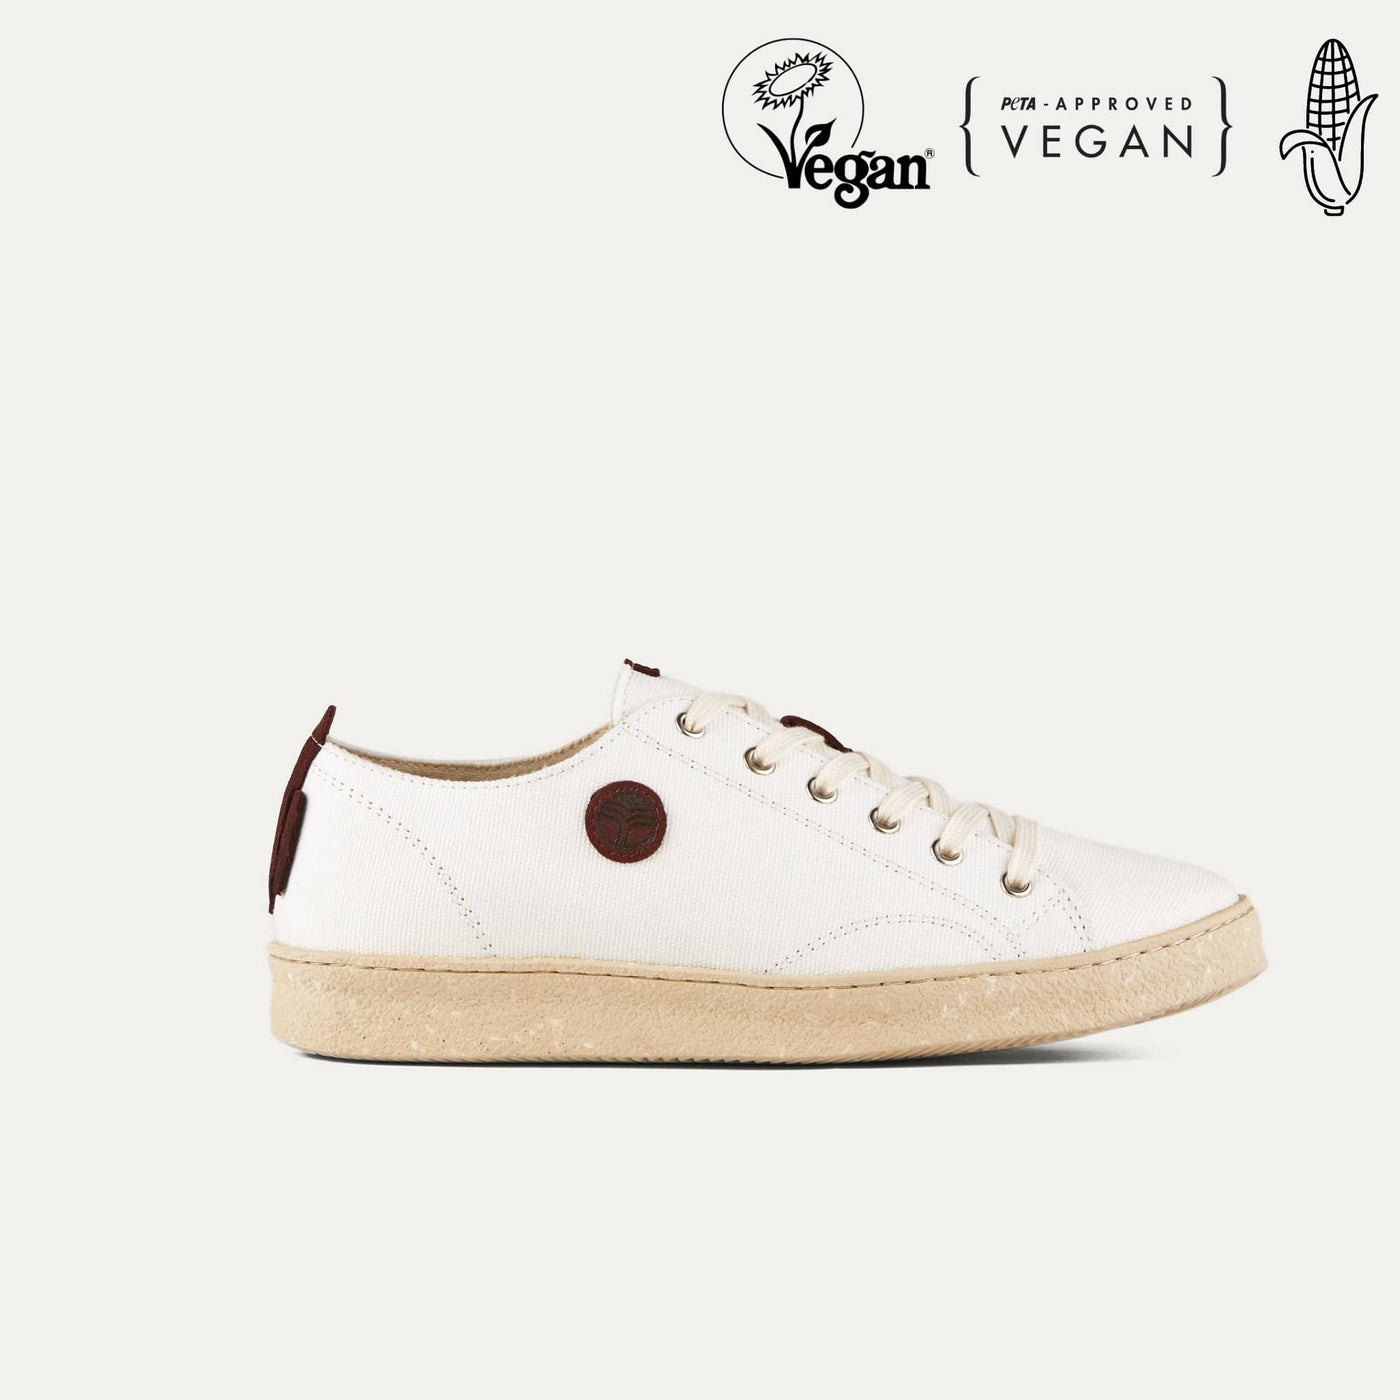 Life Borgogna Vegan Shoes